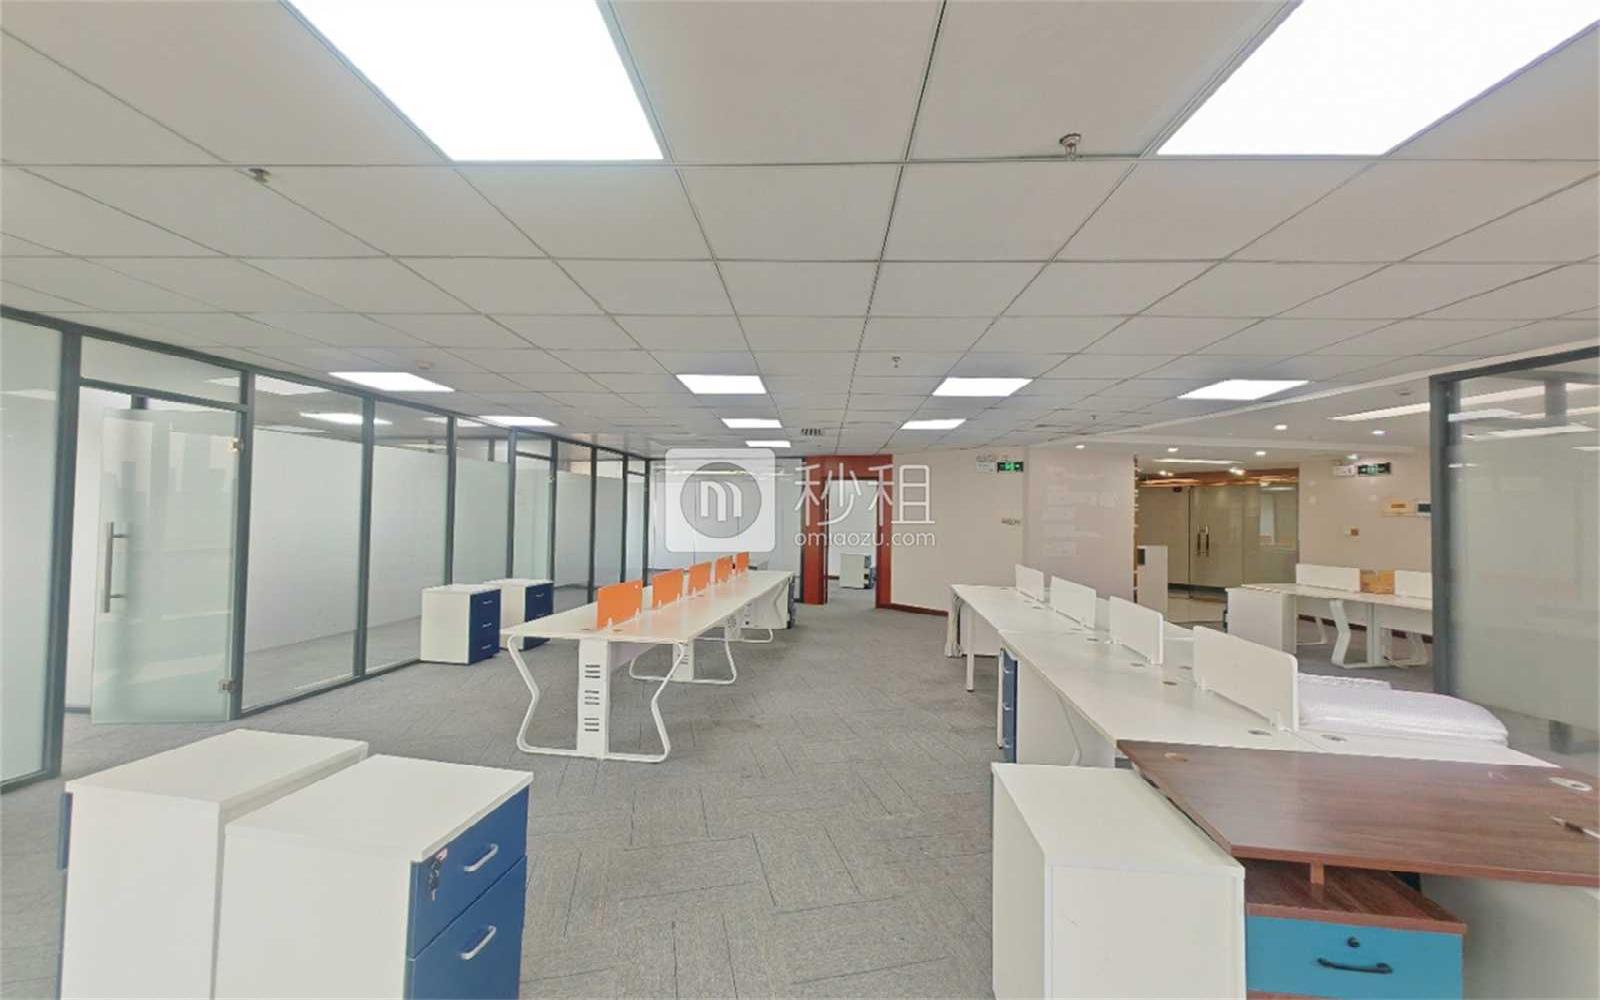 安徽大厦创展中心写字楼出租398平米精装办公室90元/m².月